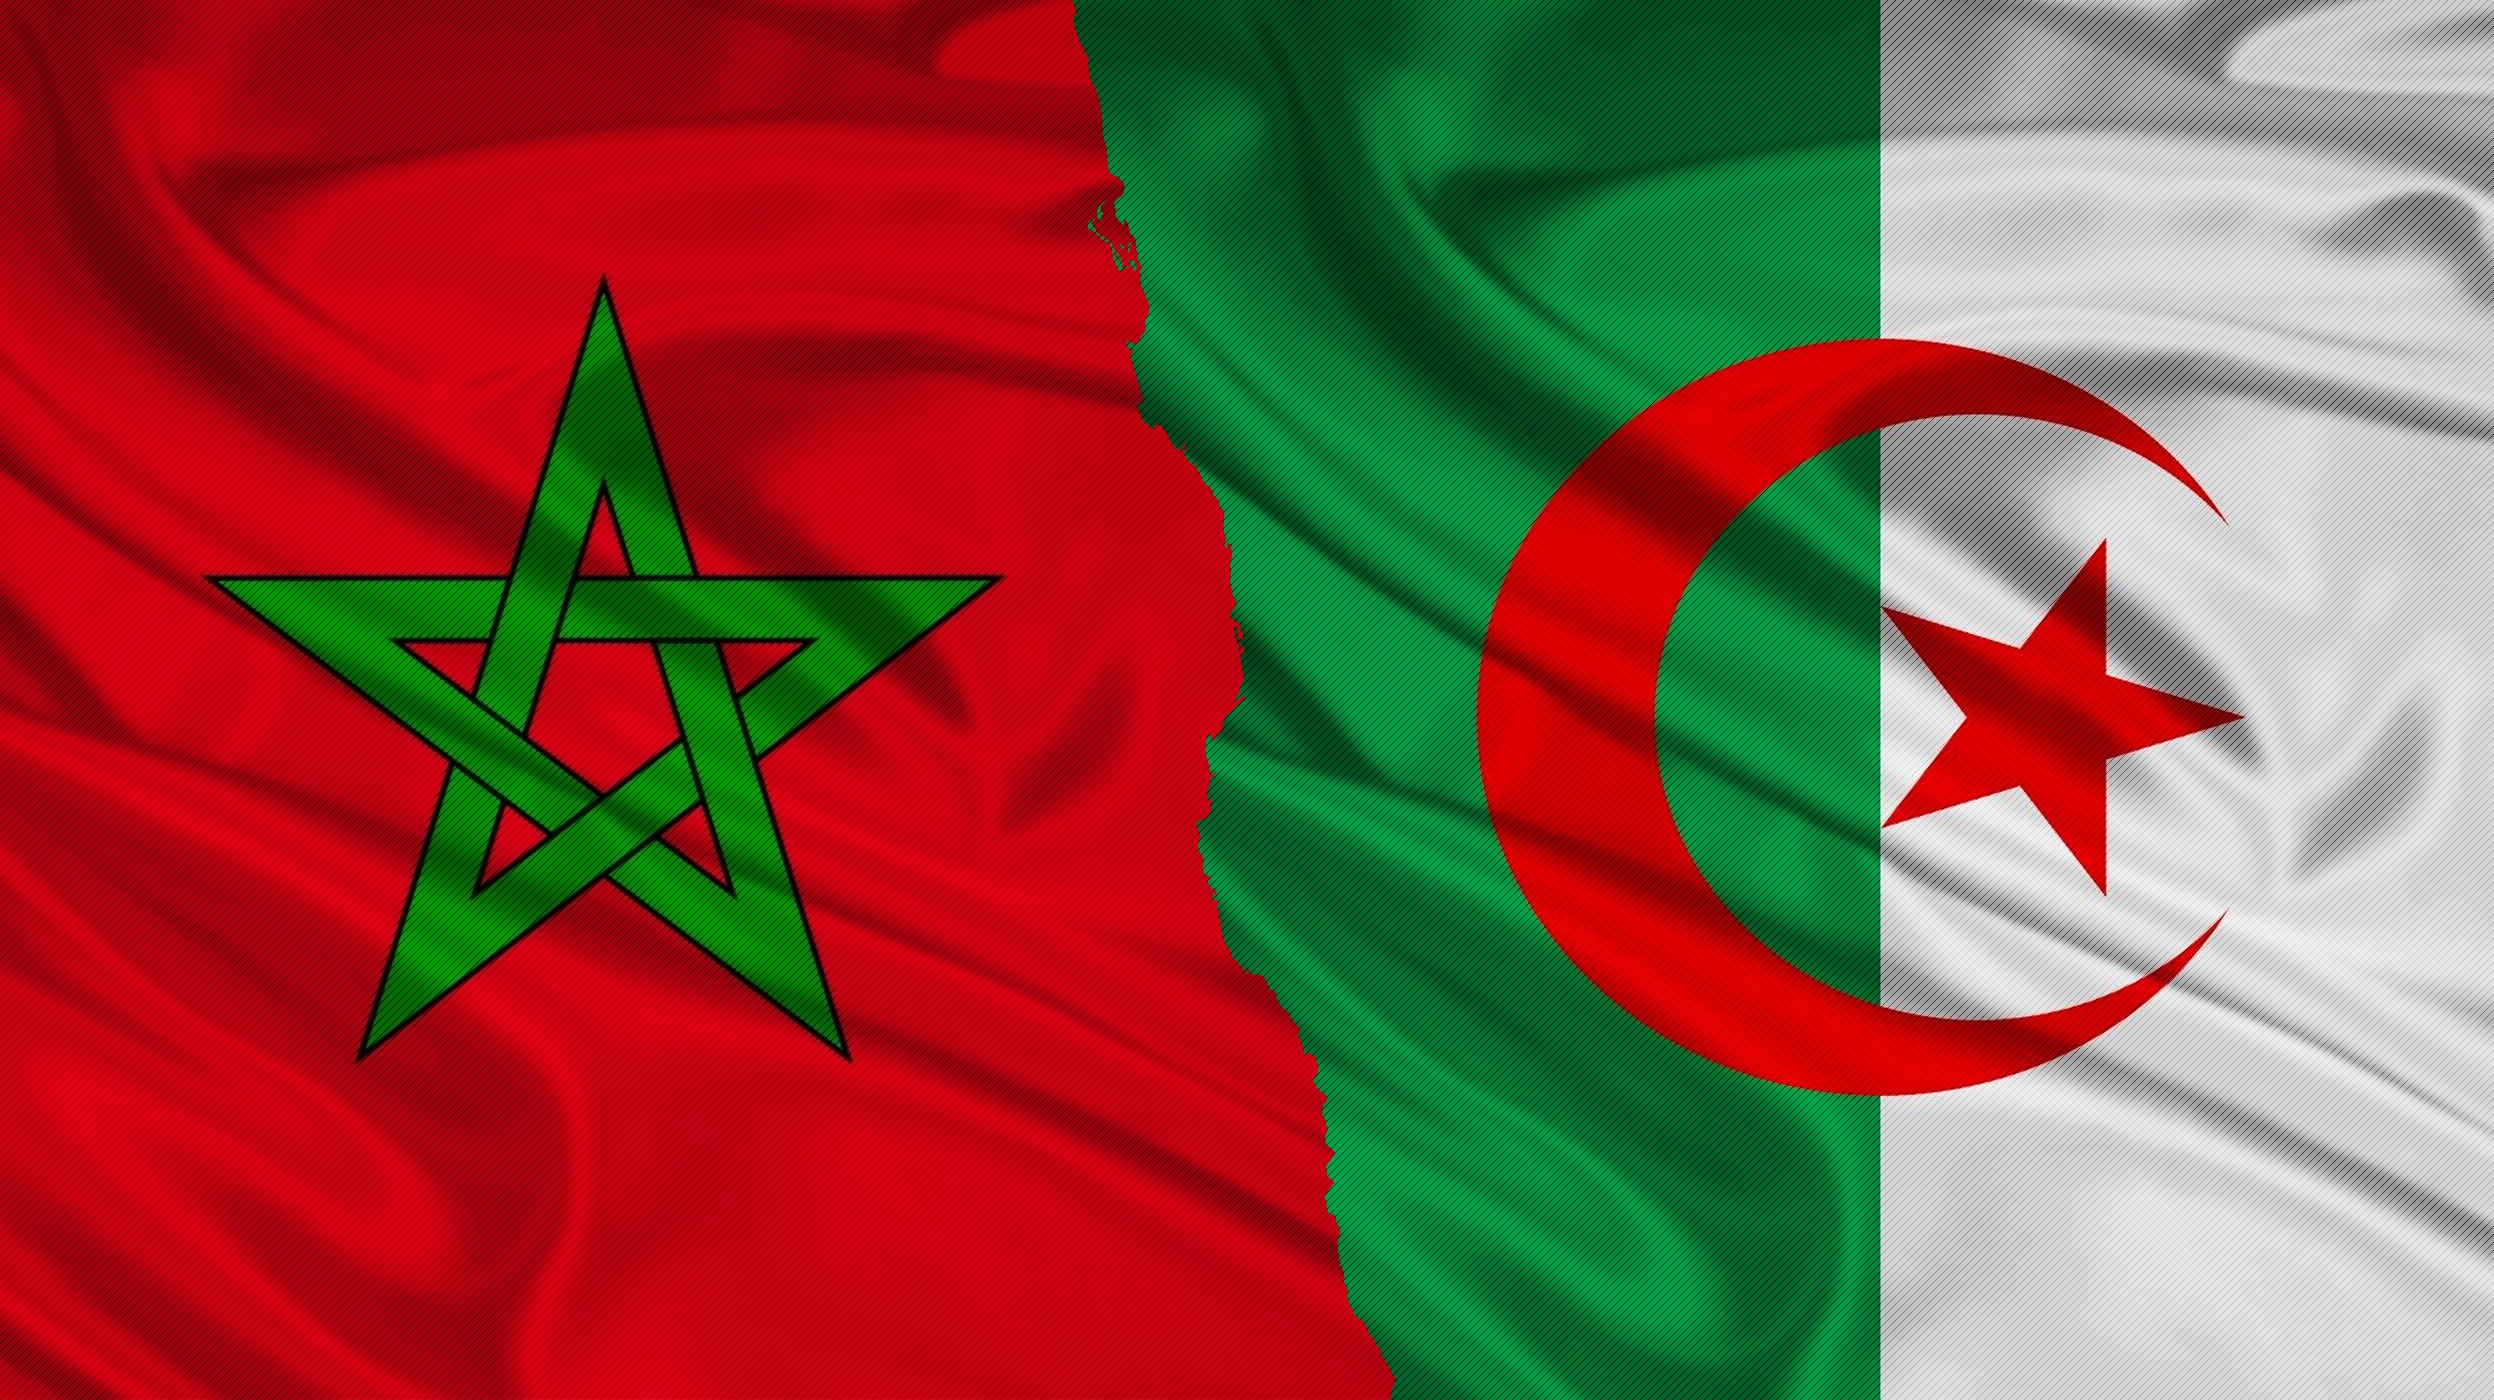 Марокко намерено взяться за урегулирование ливийского кризиса Весь мир